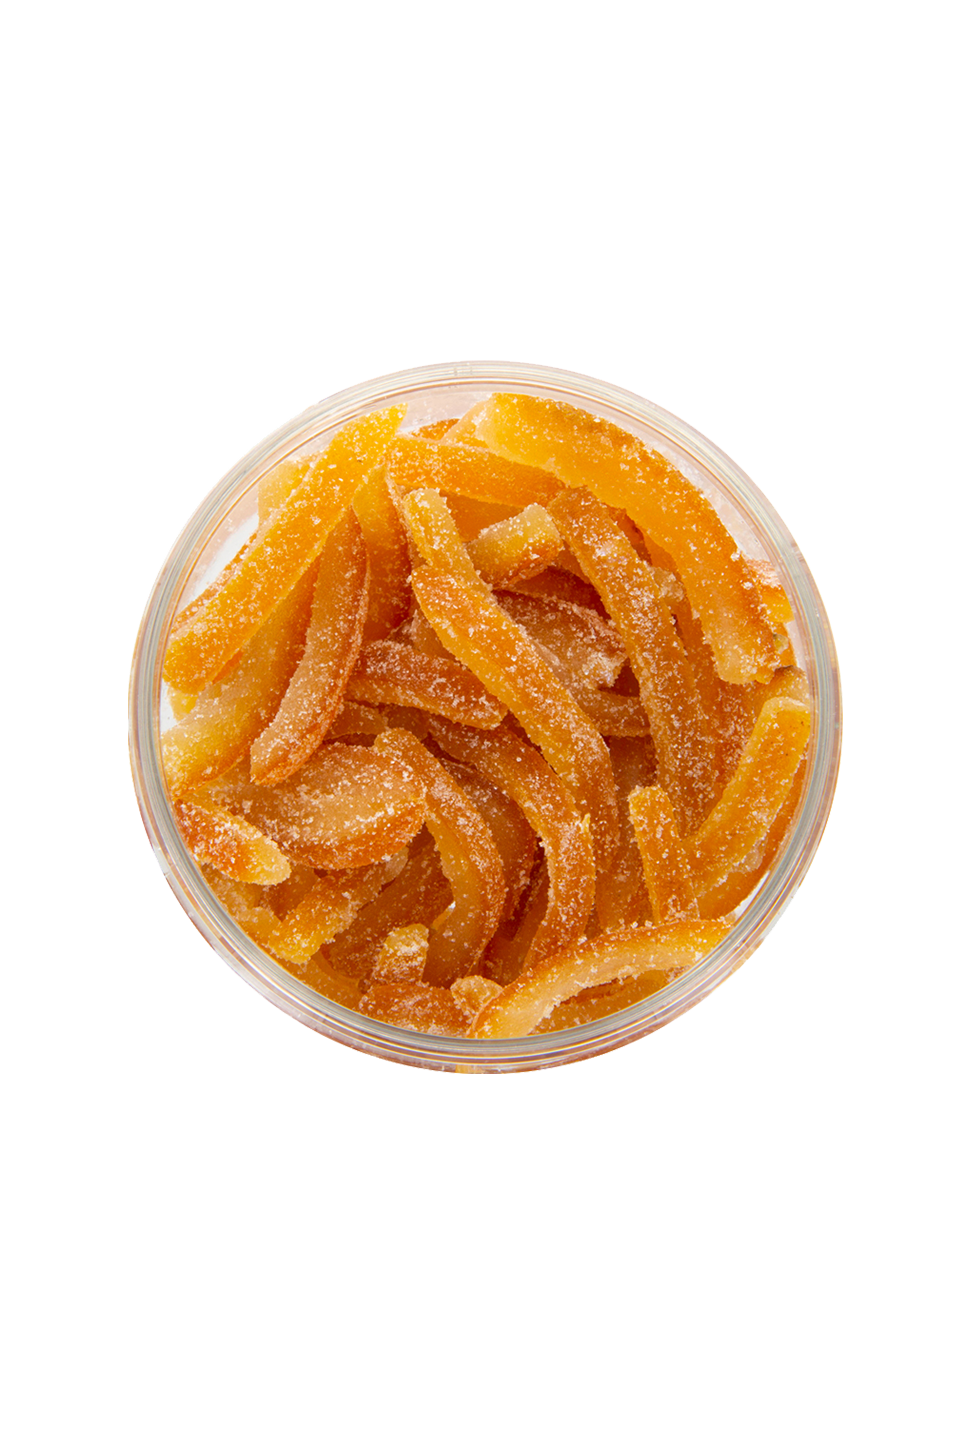 orangette au sucre box pâtisserie 200g